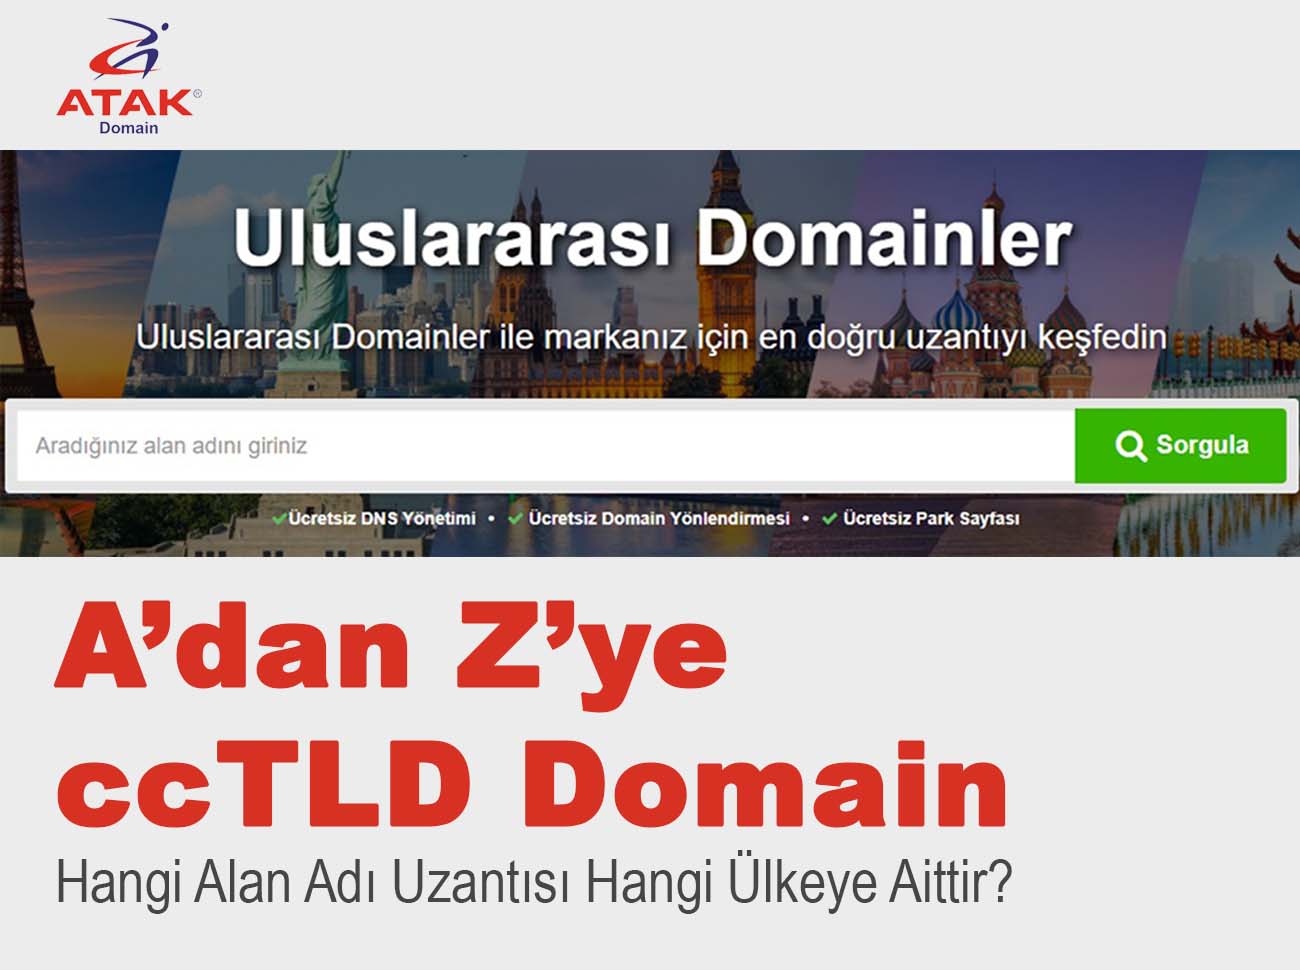 ccTLD Domain Nedir? Hangi Alan Adı Uzantısı Hangi Ülkeye Aittir?